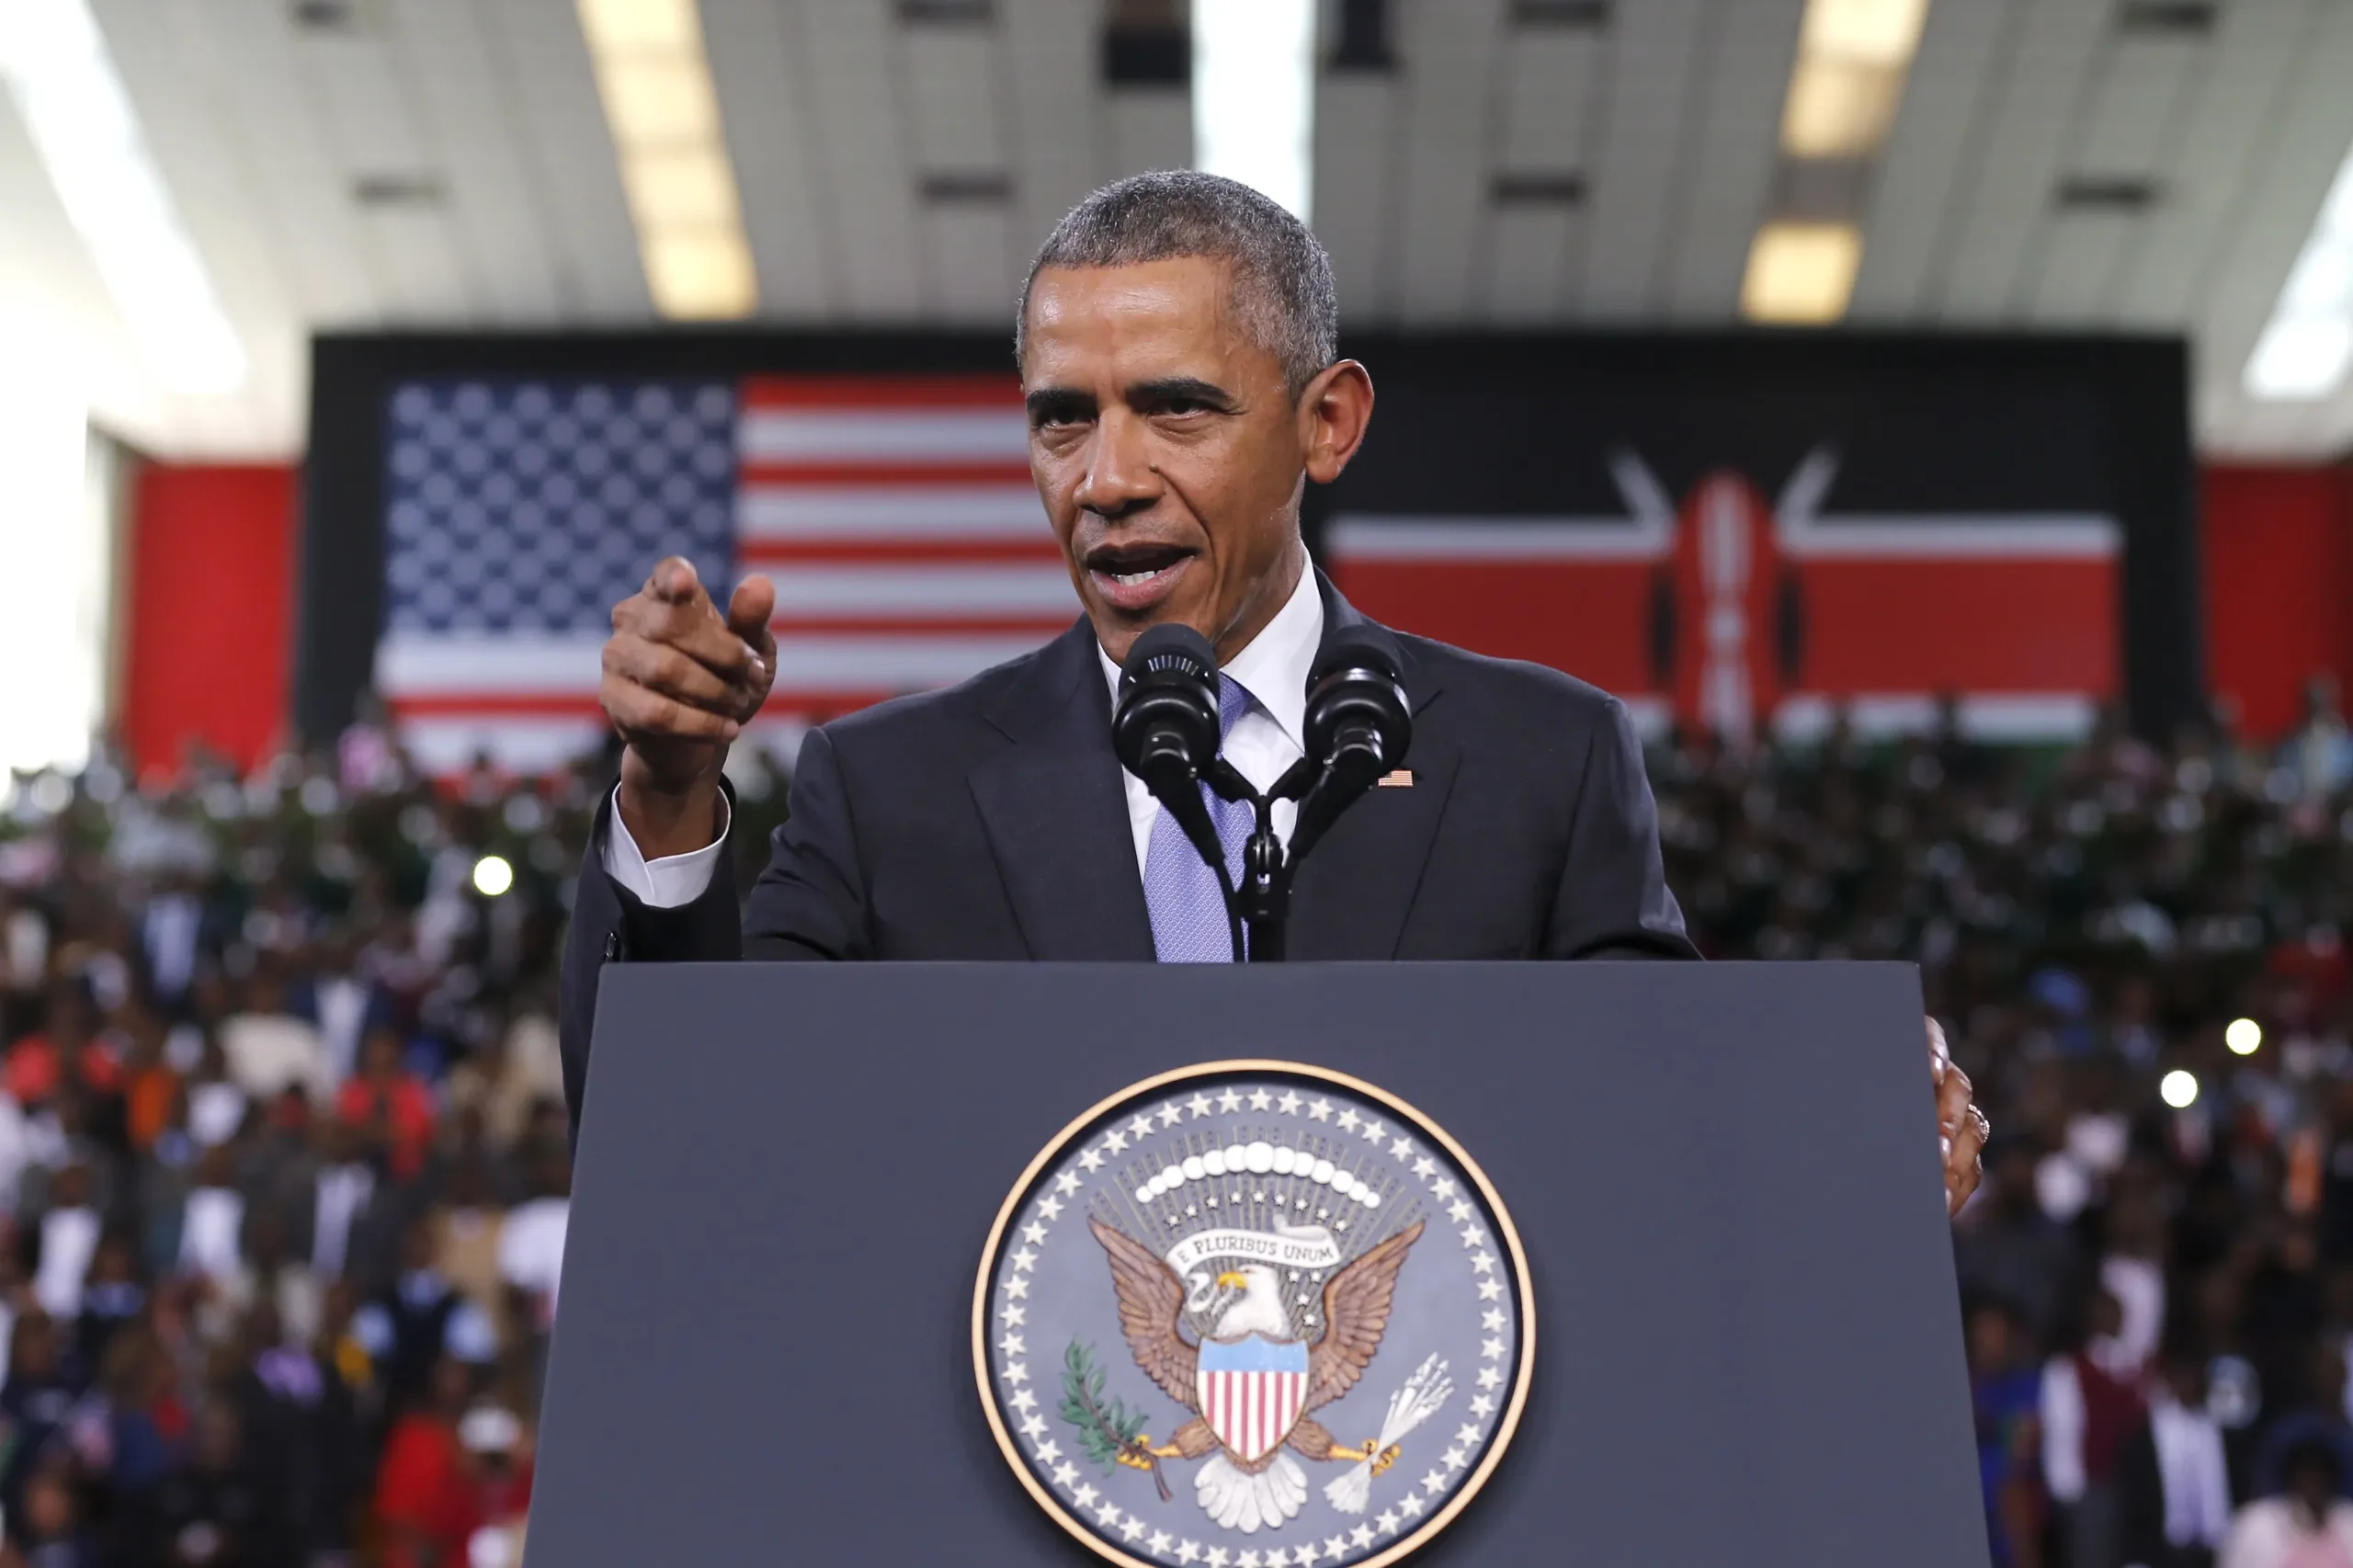 Obama in Kenya 2015